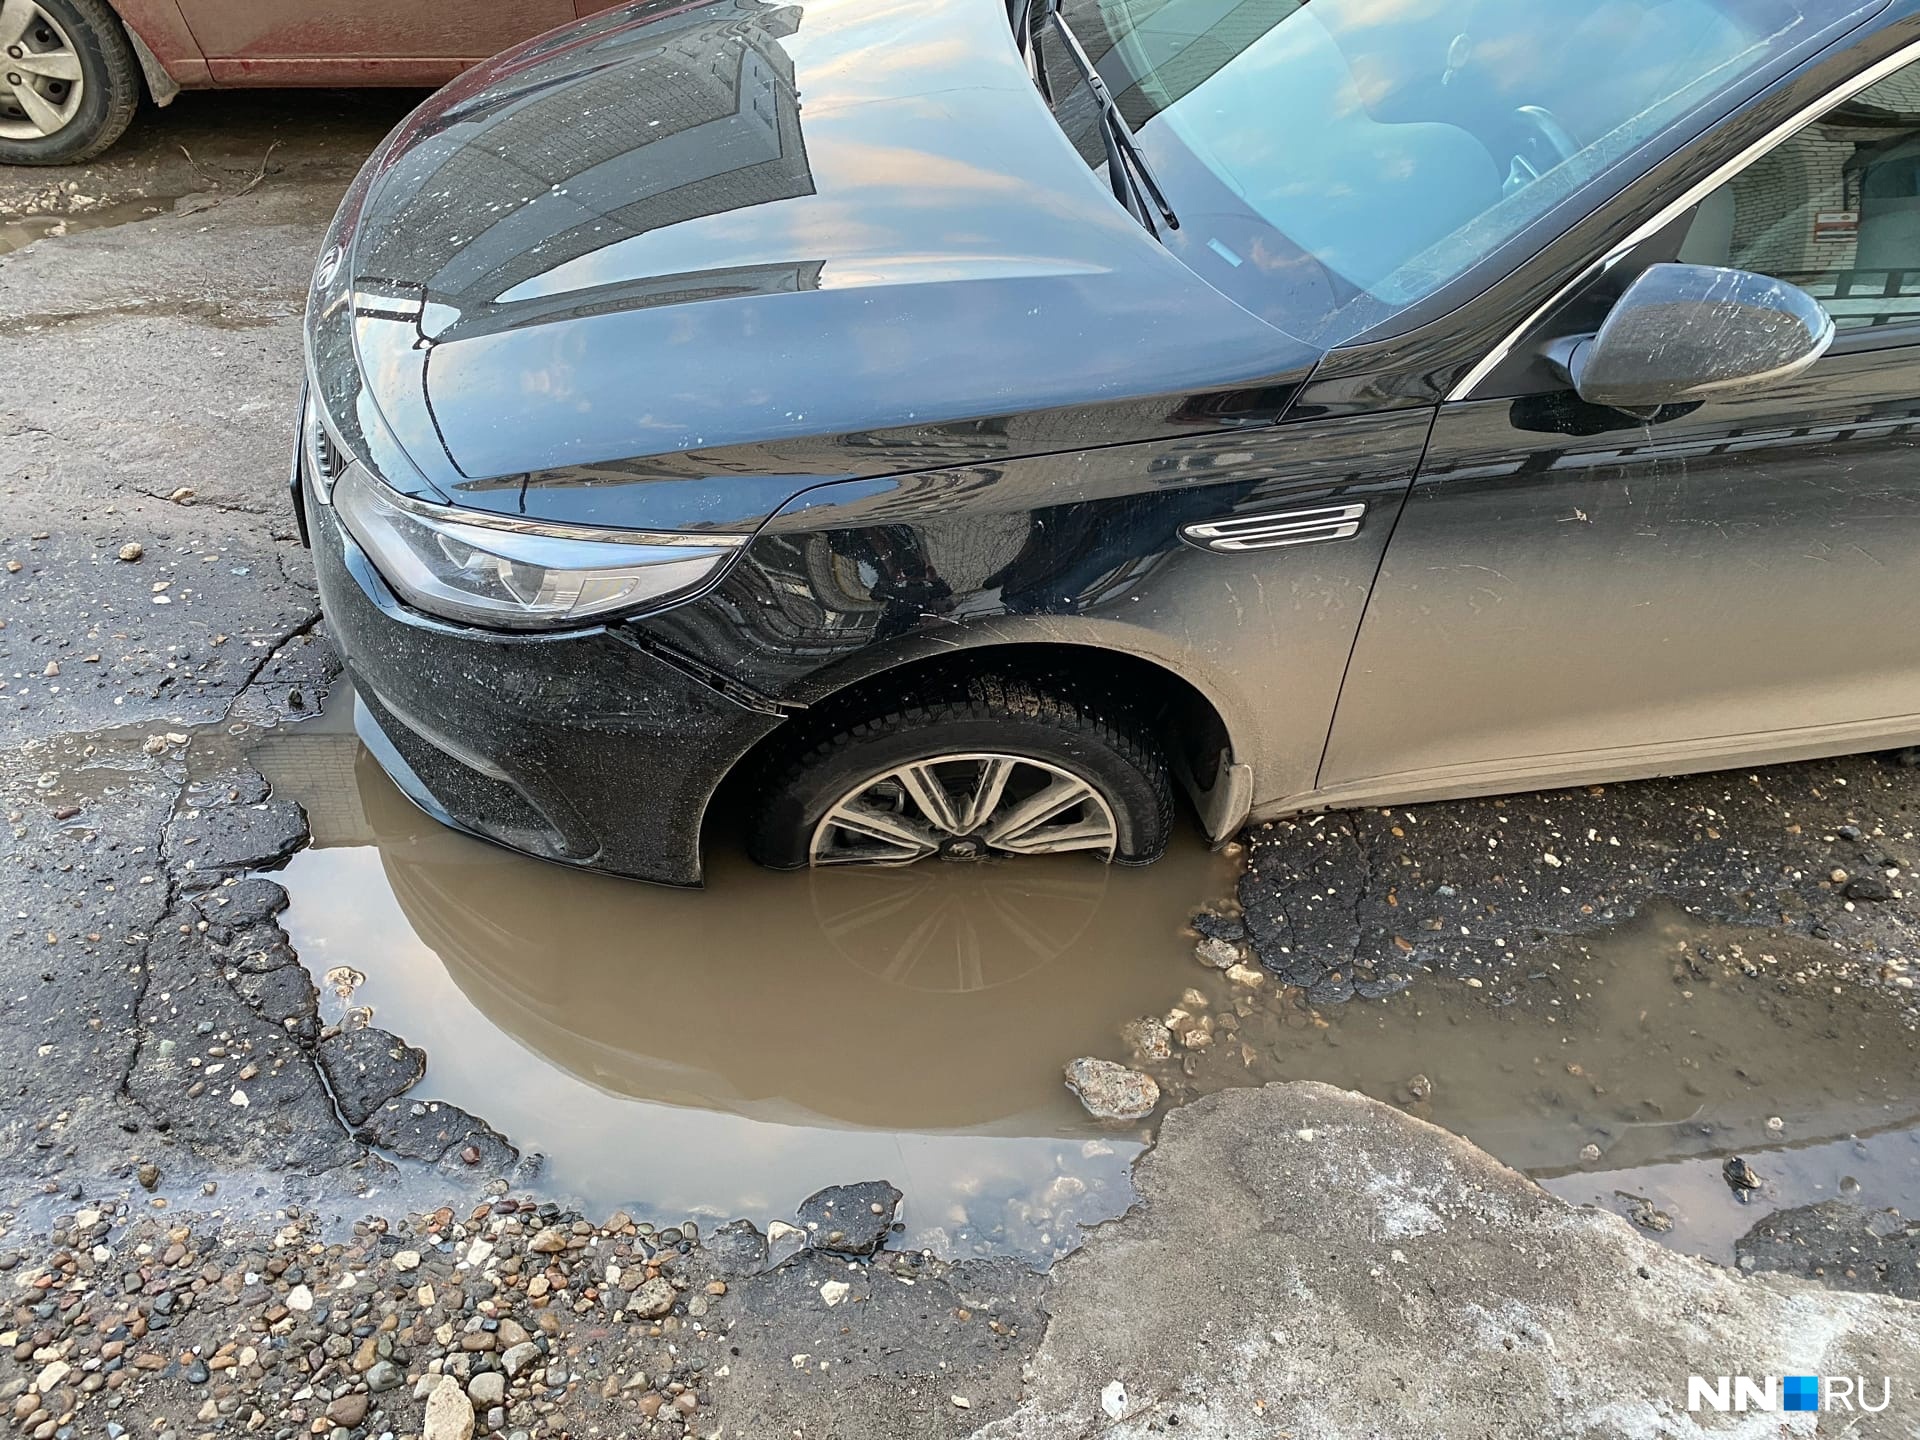 Колесо попало в яму на дороге. Яма для машины.